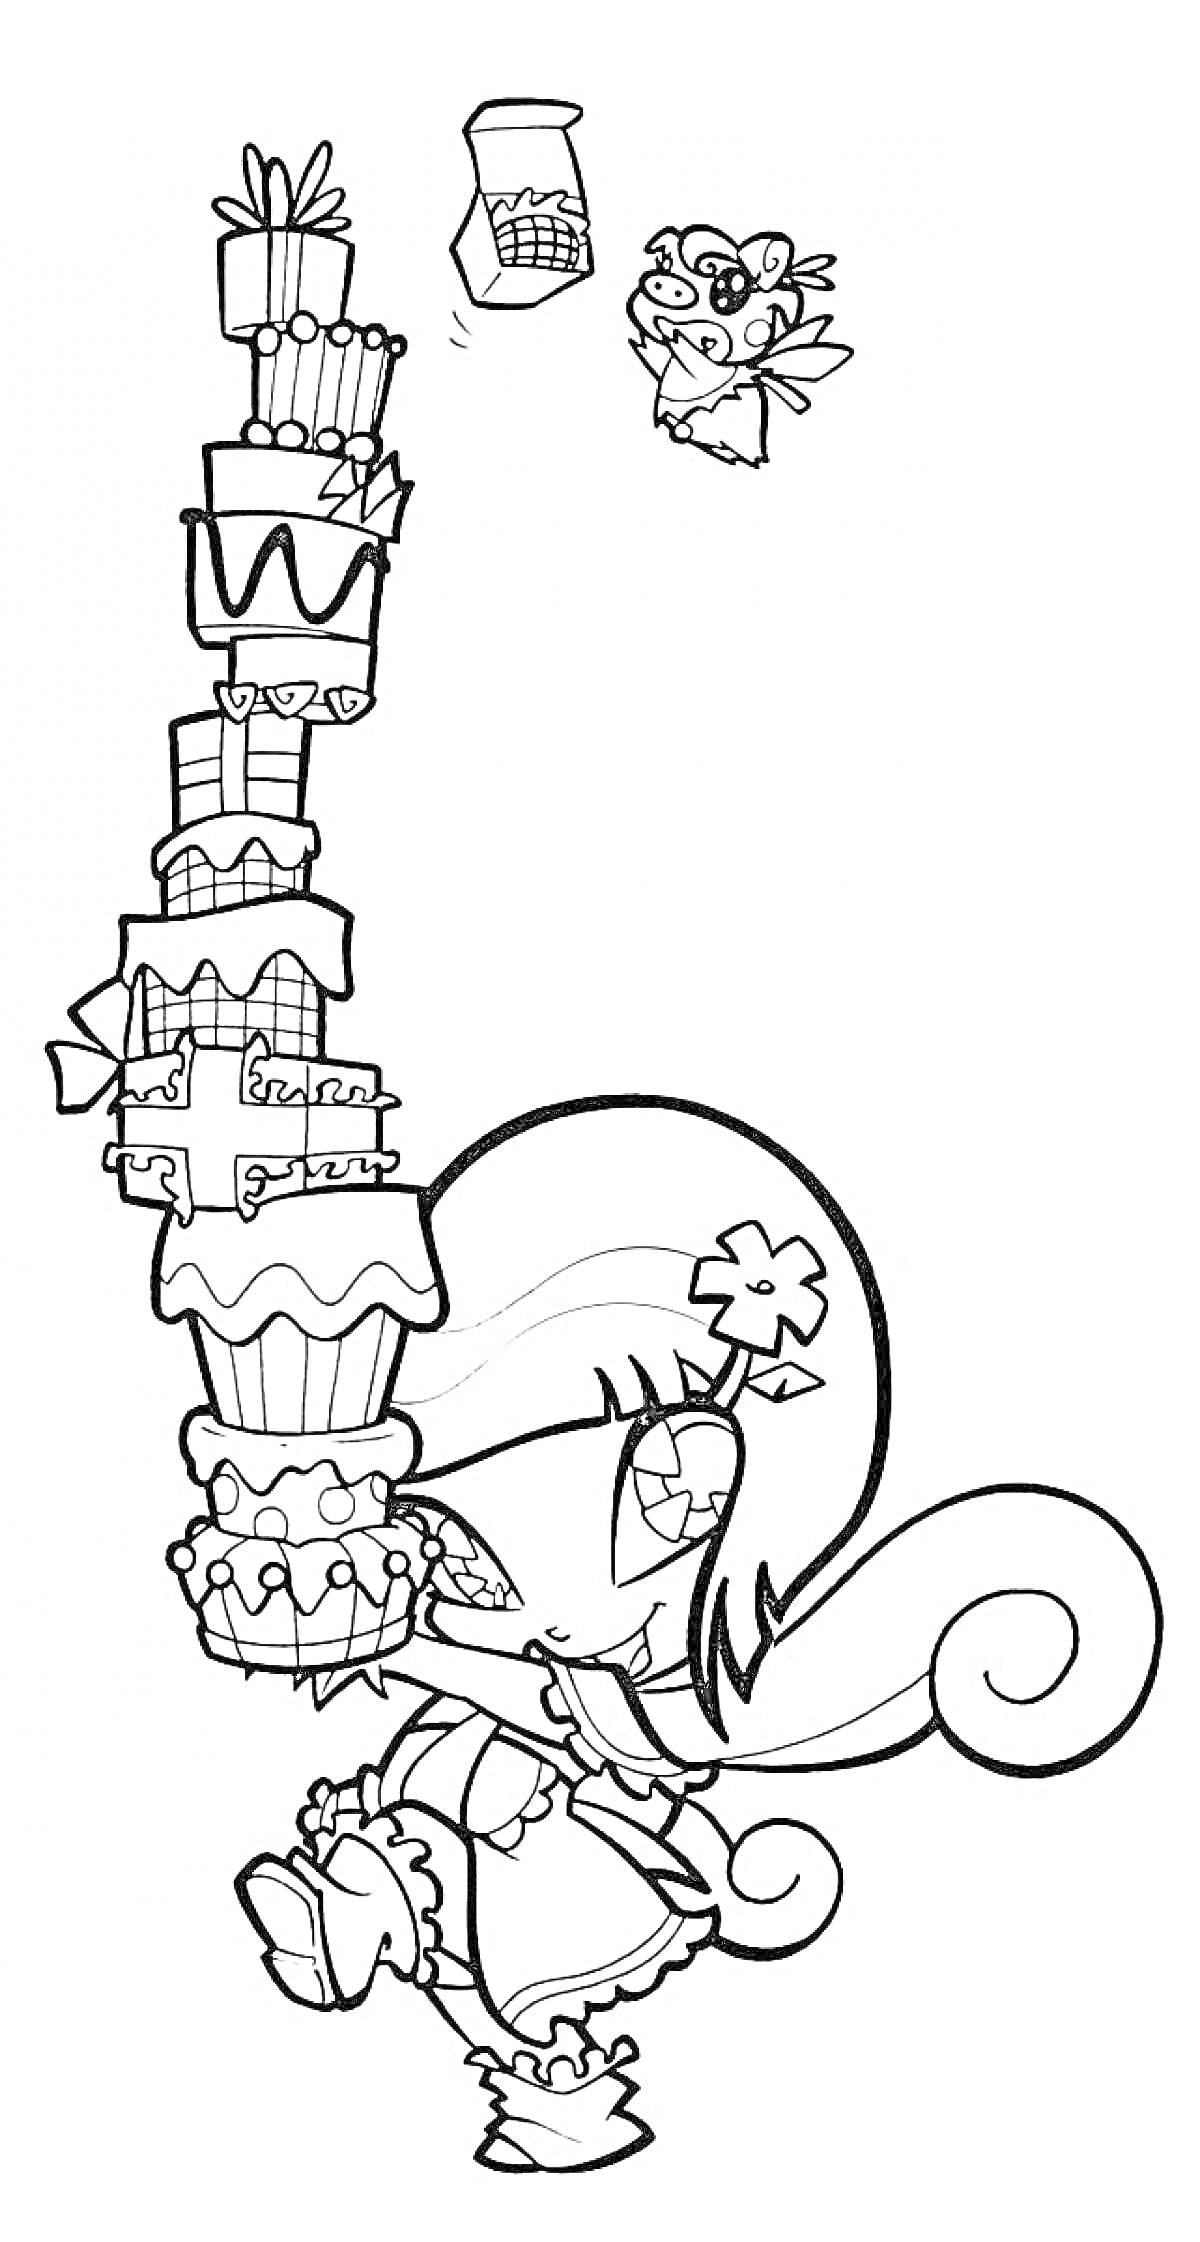 Раскраска Пикси из Винкс несёт высокий штабель подарков, рядом летит другое существо, держащее подарок.